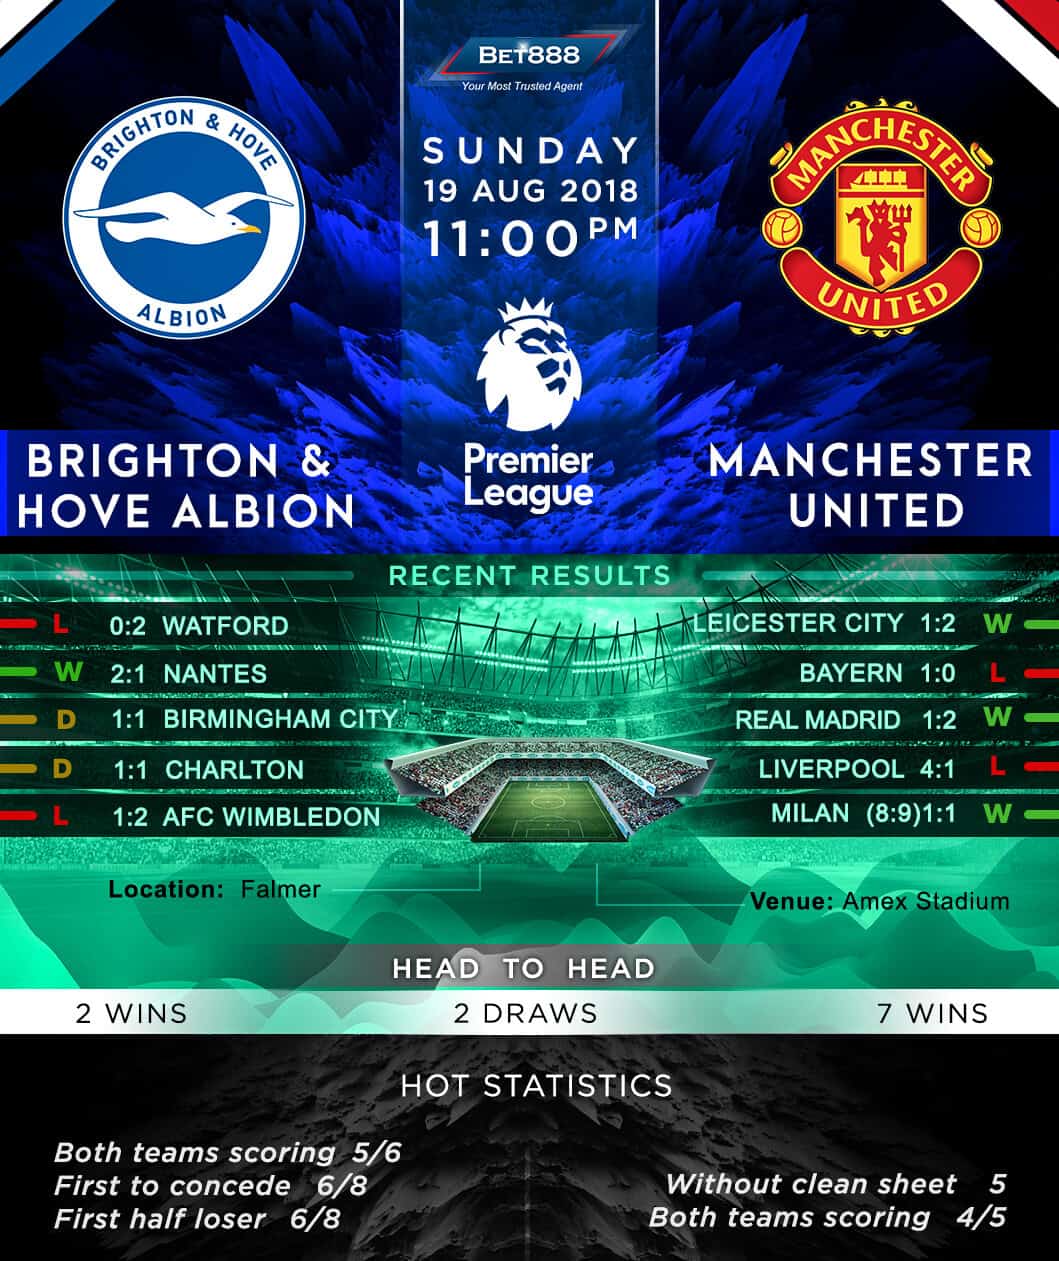 Brighton & Hove Albion vs Manchester United 19/08/18